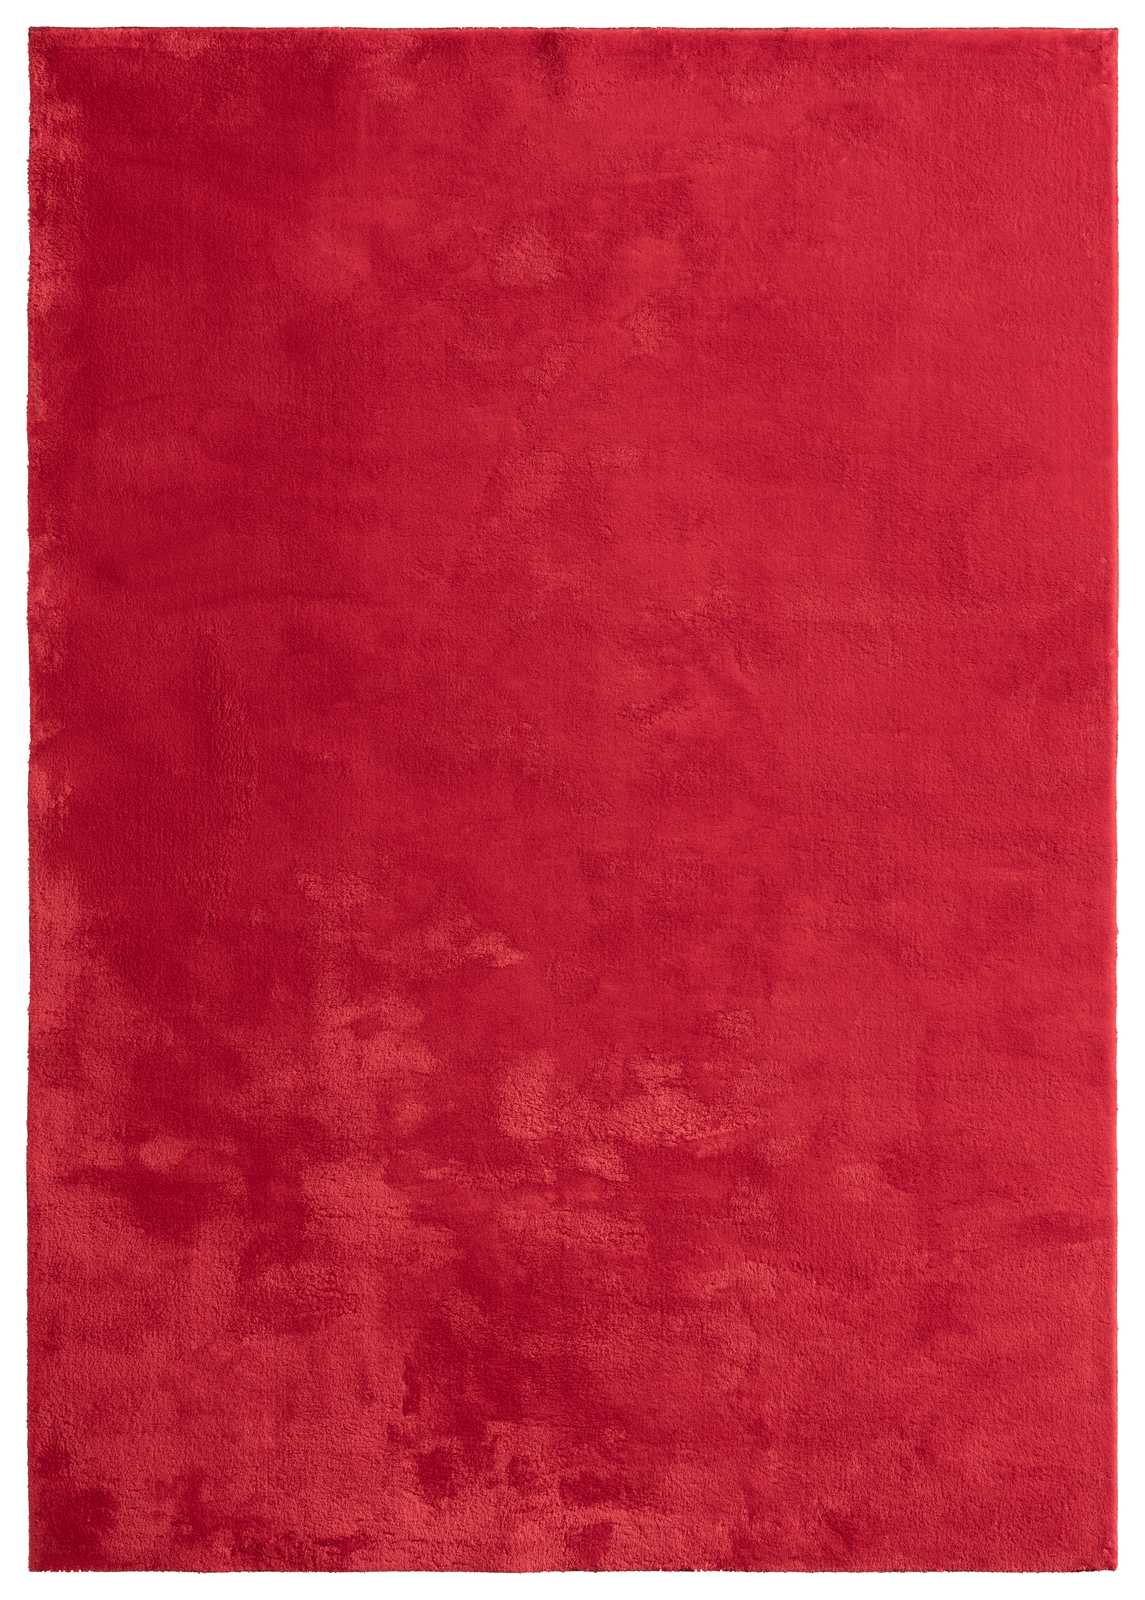             Besonders weicher Hochflor Teppich in Rot – 110 x 60 cm
        